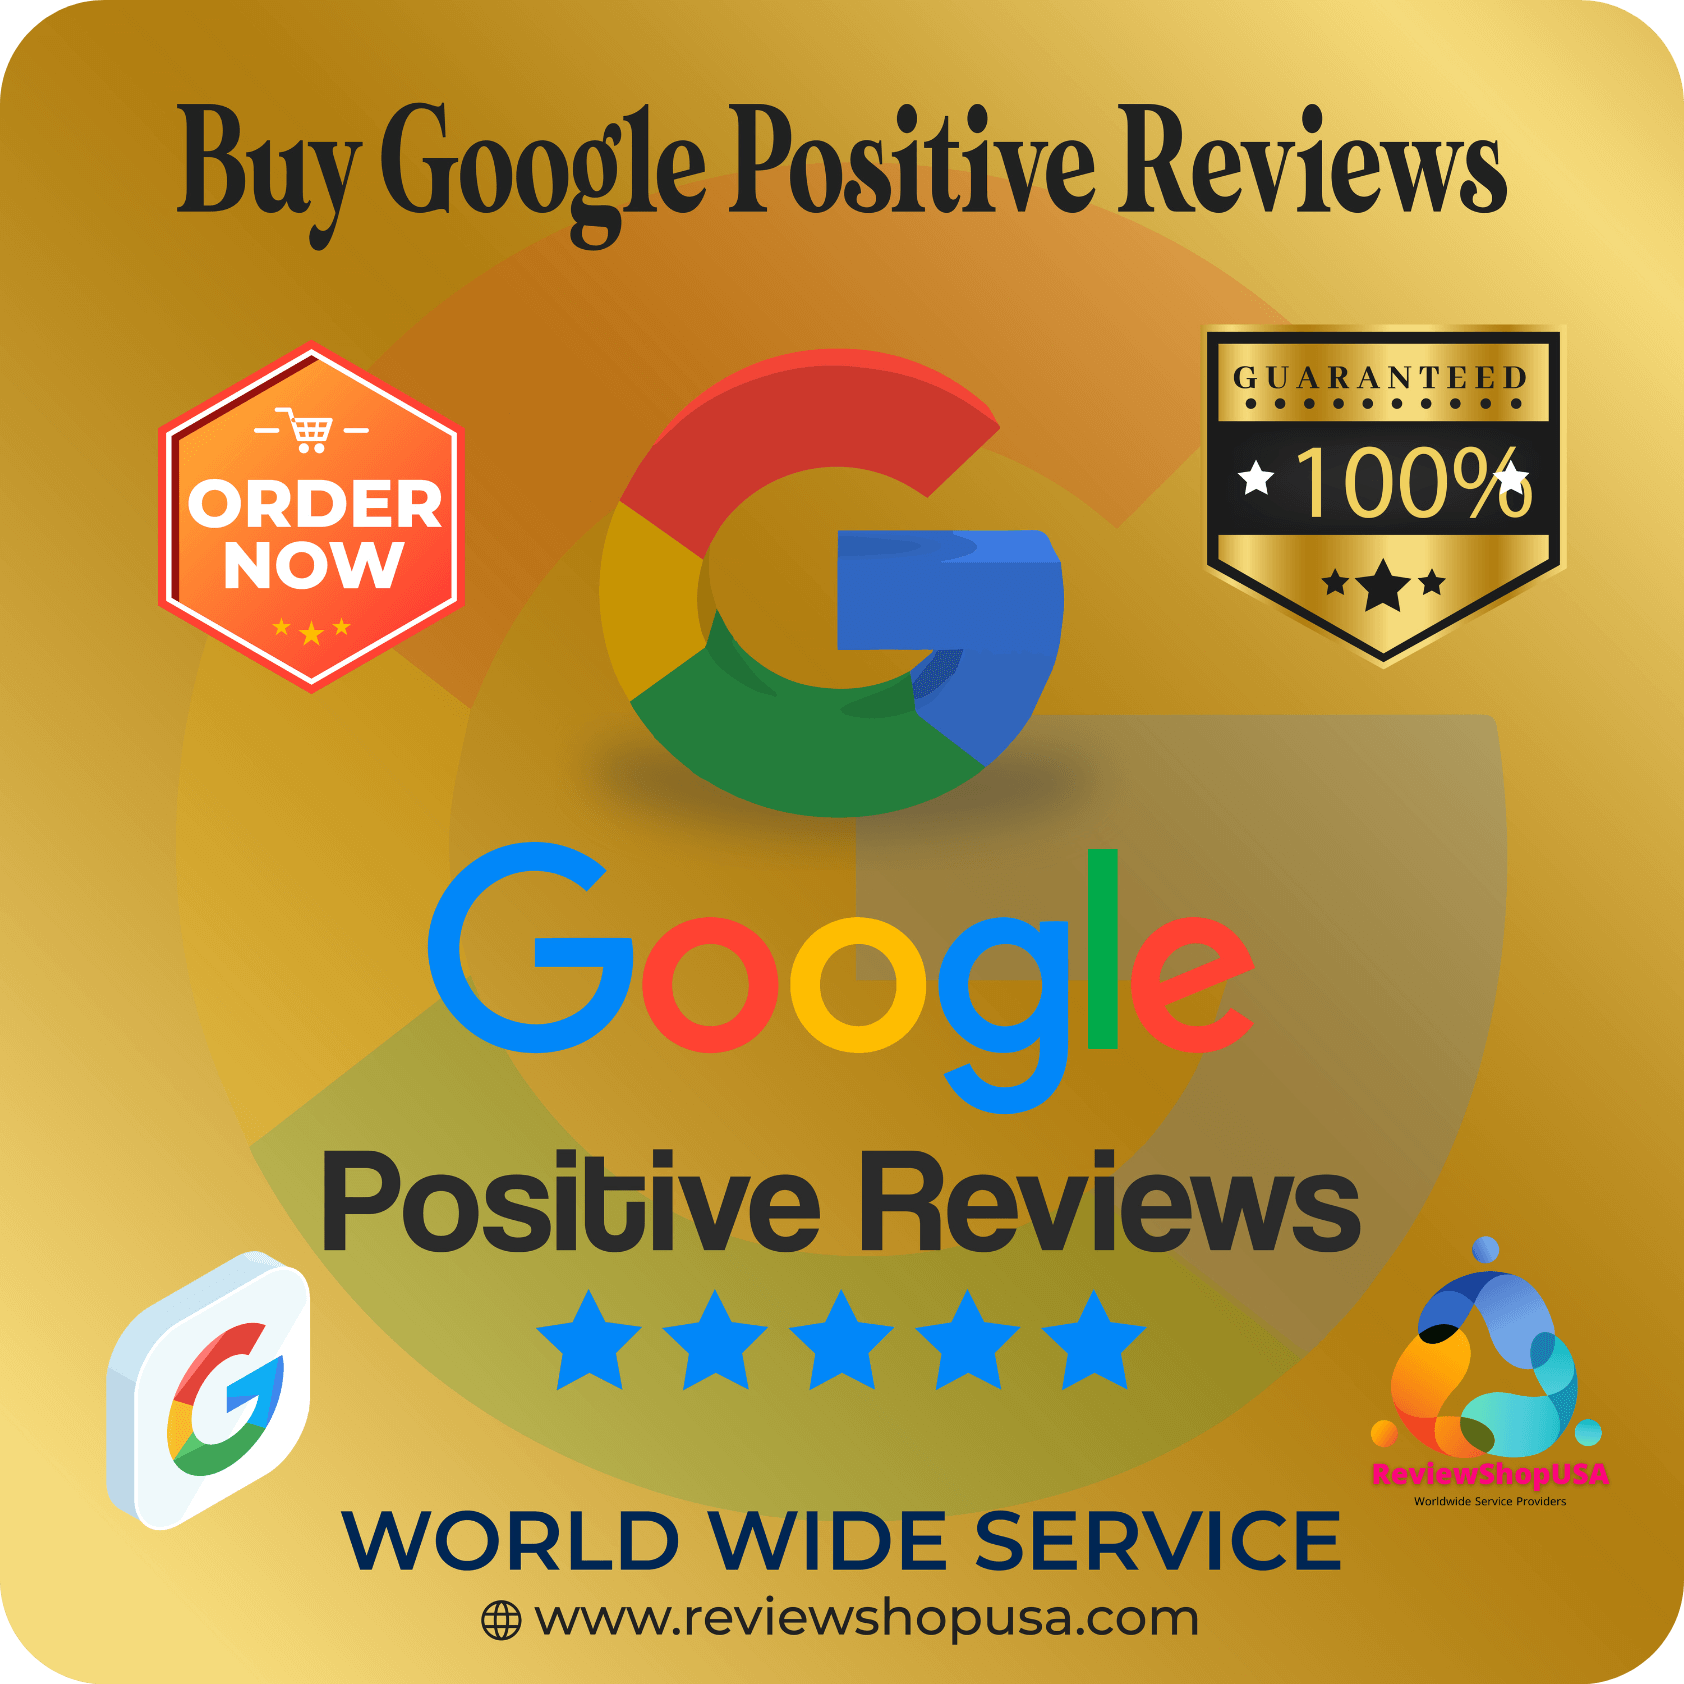 Buy Google Positive Reviews - 100% Permanent Positive Reviews.